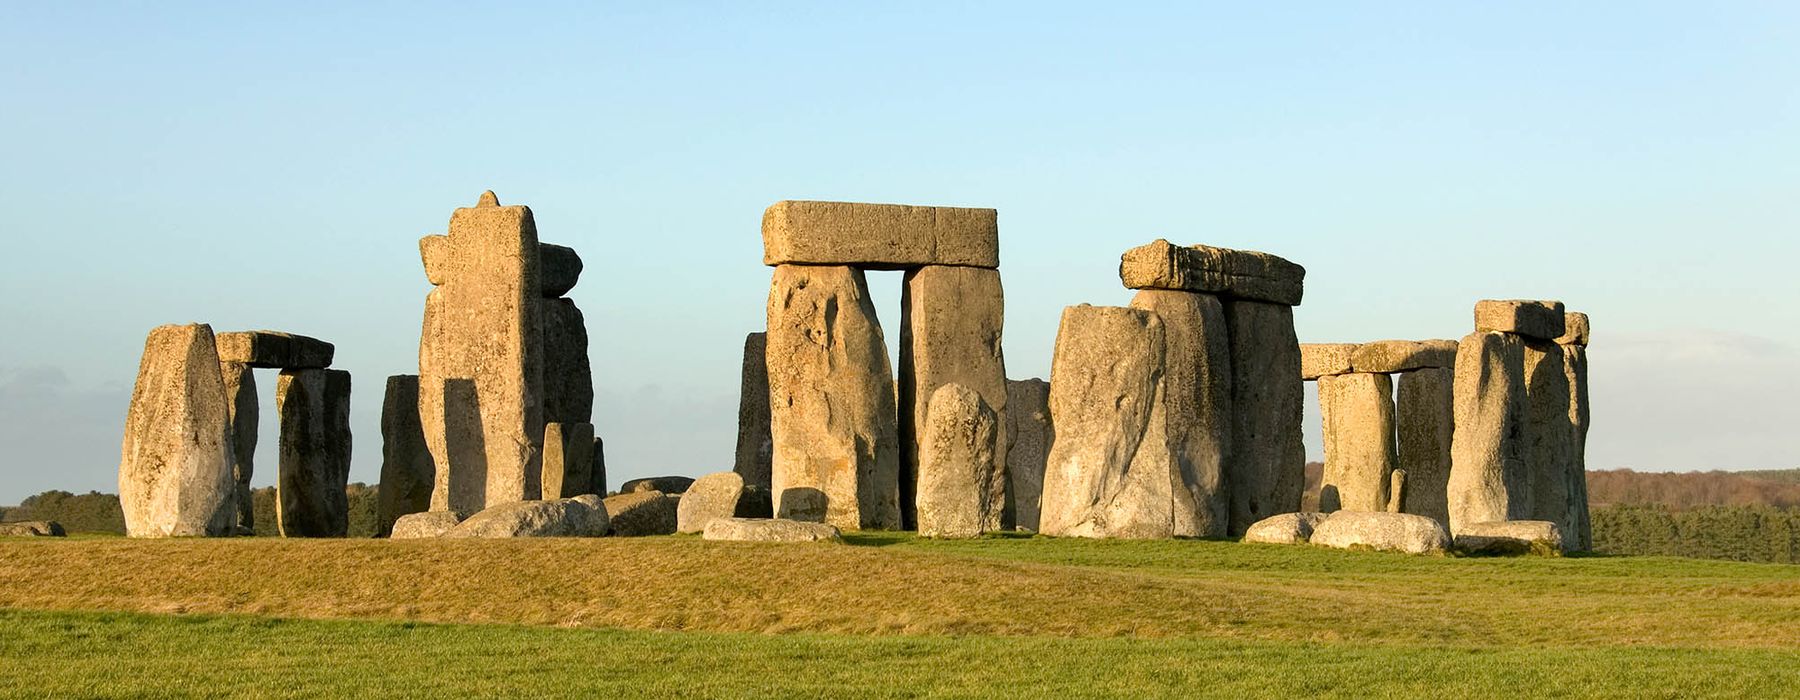 Weltkulturerbe in Europa - Stonehenge